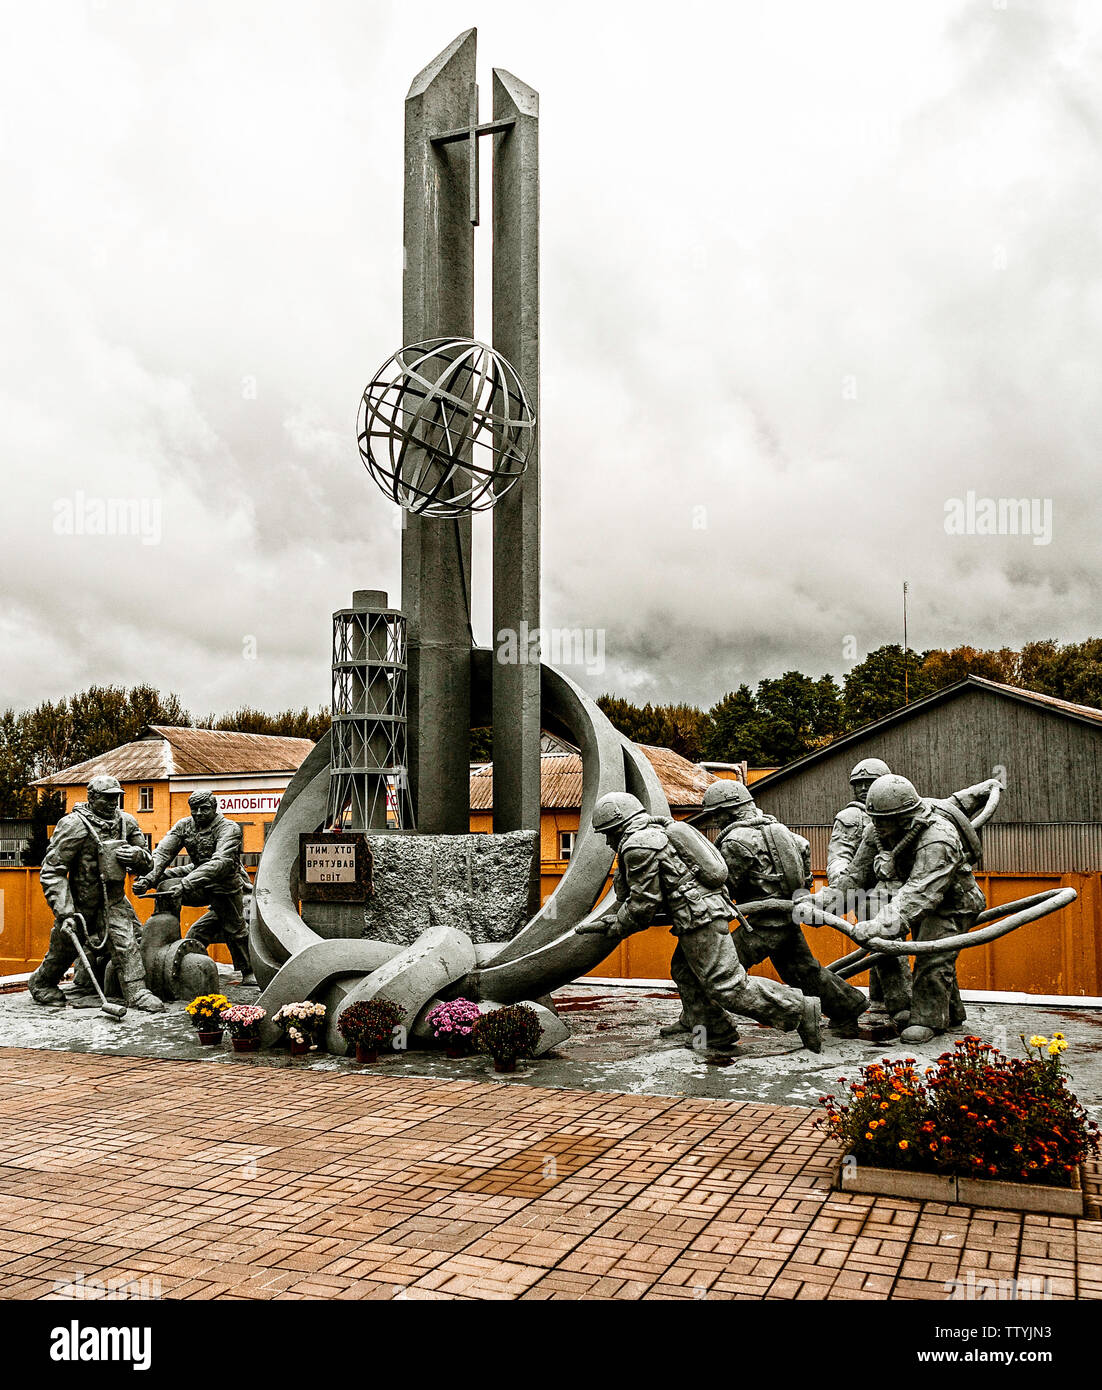 Die Feuerwehrmänner von Tschernobyl: Amonument. Die nuklearen Unfall am Abend des 26. April, 1986 aufgetreten. So etwas hatte noch nie gegeben. So was tun Sie? Die Feuerwehr wurden in geschickt mit dem Unbekannten umzugehen und innerhalb weniger Tage waren sie alle tot. Strahlung. Diese eloquant und gepflegt Monument ist ein Tribut an ihren Mut. 22 junge Leben verschwunden. Der erste von vielen. Diejenigen, die nicht wissen, was zu tun ist, sie hatten Angst, dass Gorbatschow. Er fand heraus, am nächsten Morgen mit einem Anruf von der Schwedischen Präsident, über ein Radio aktive Wolke aus der Ukraine Stockfoto